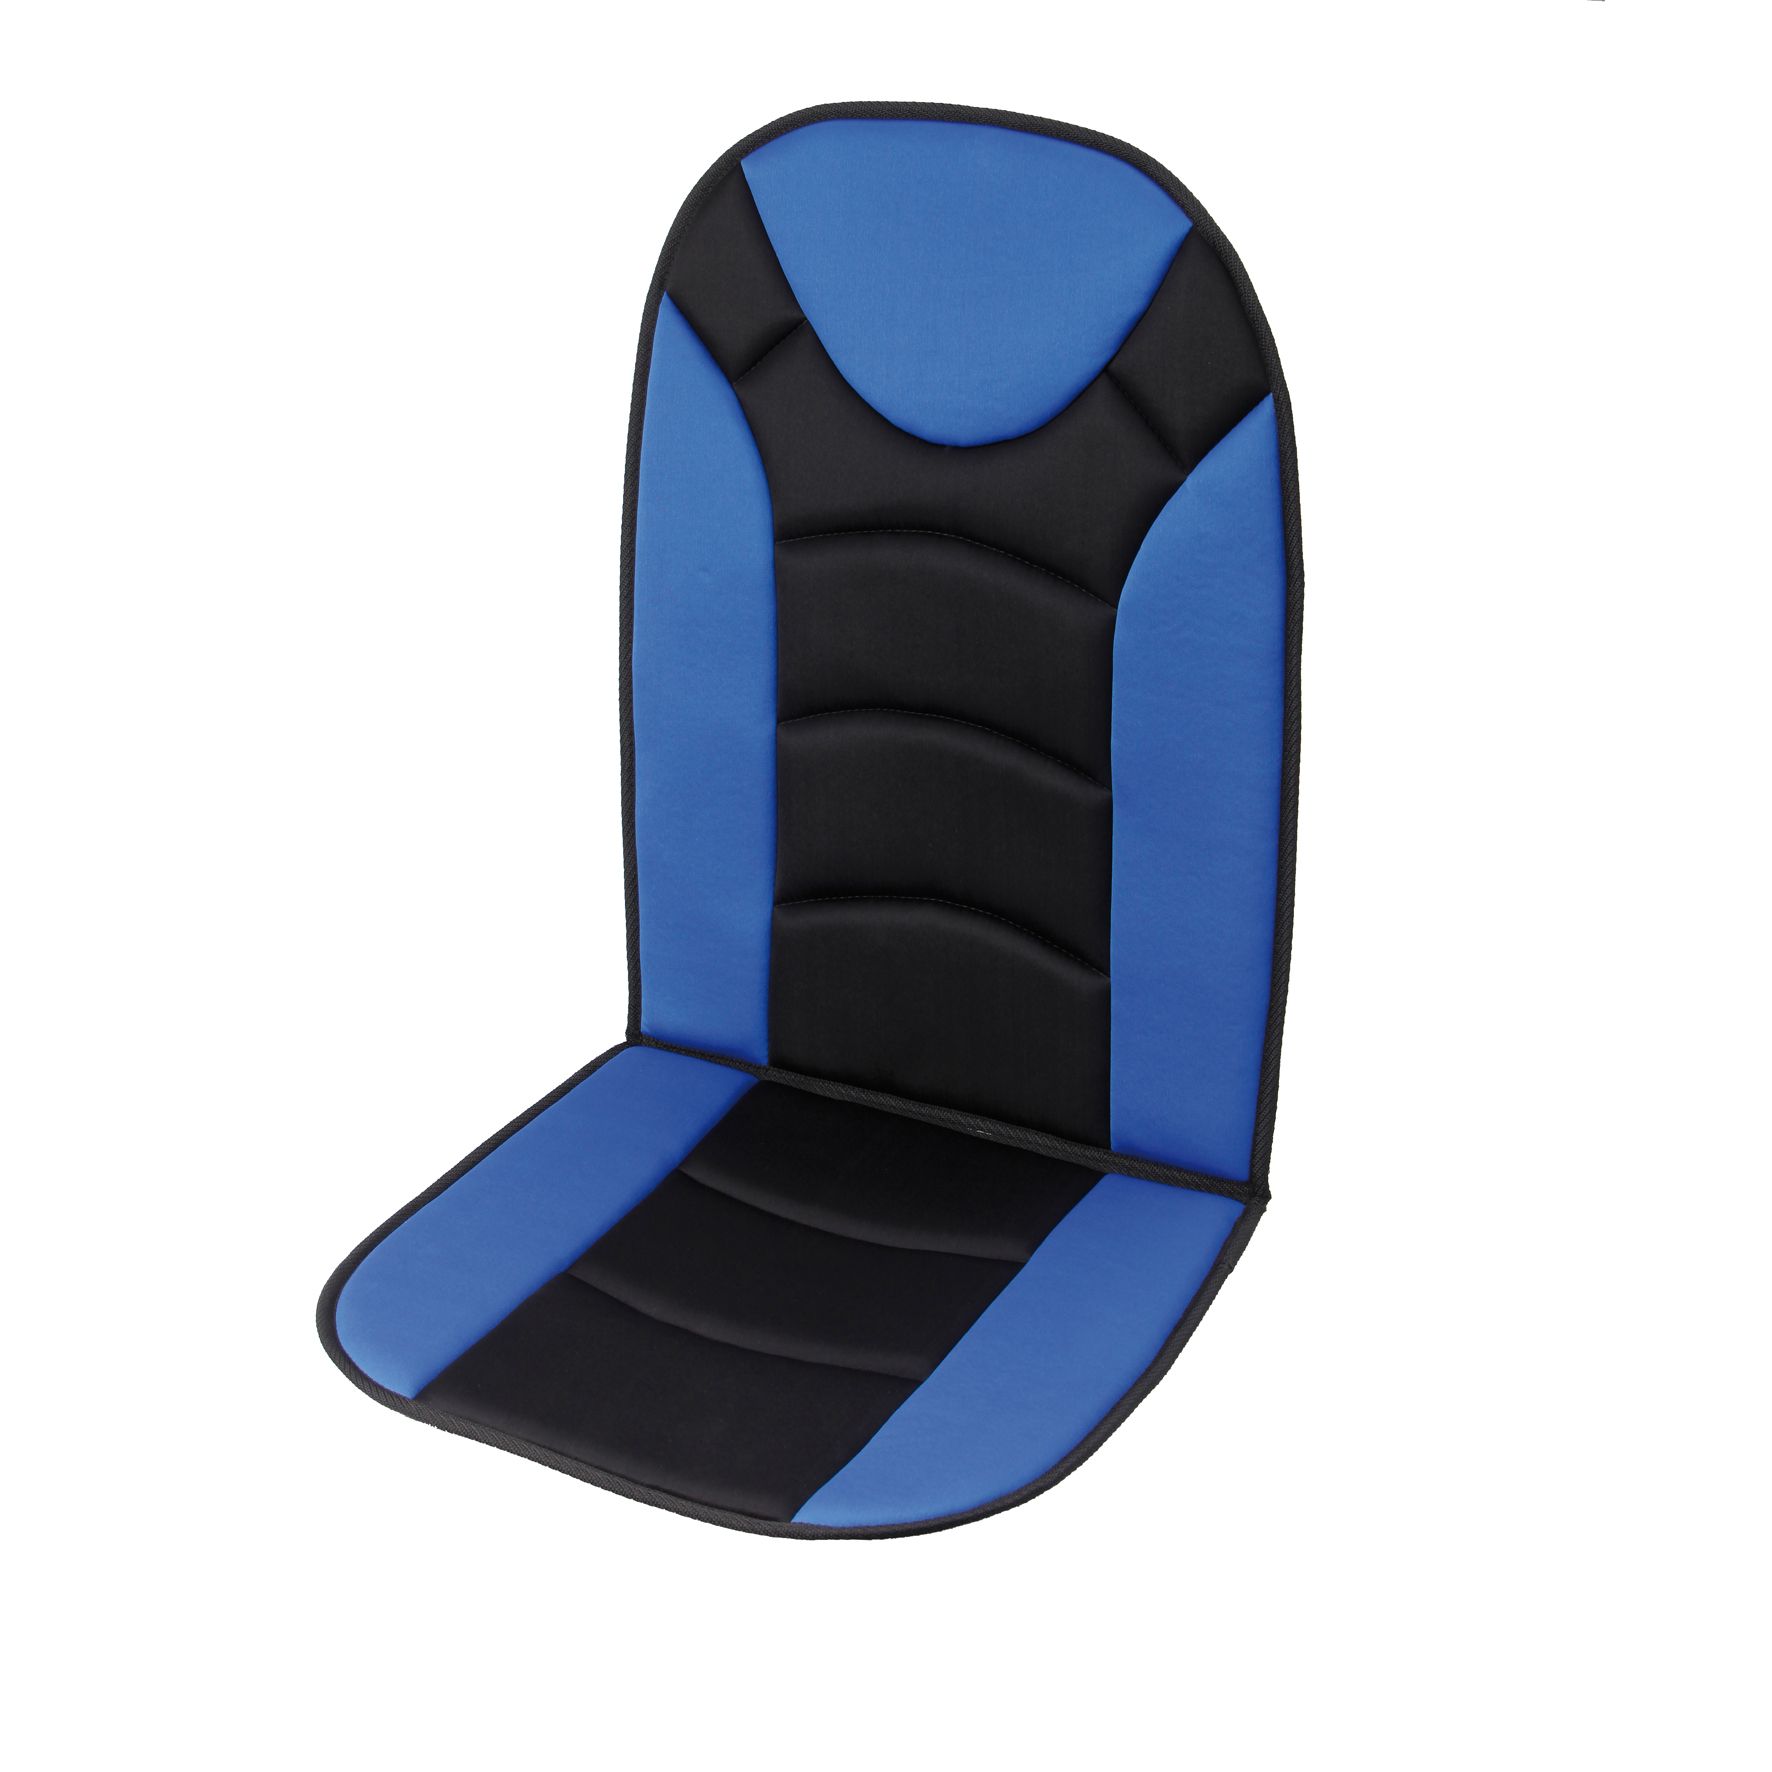 Sitzauflage Trend schwarz/blau